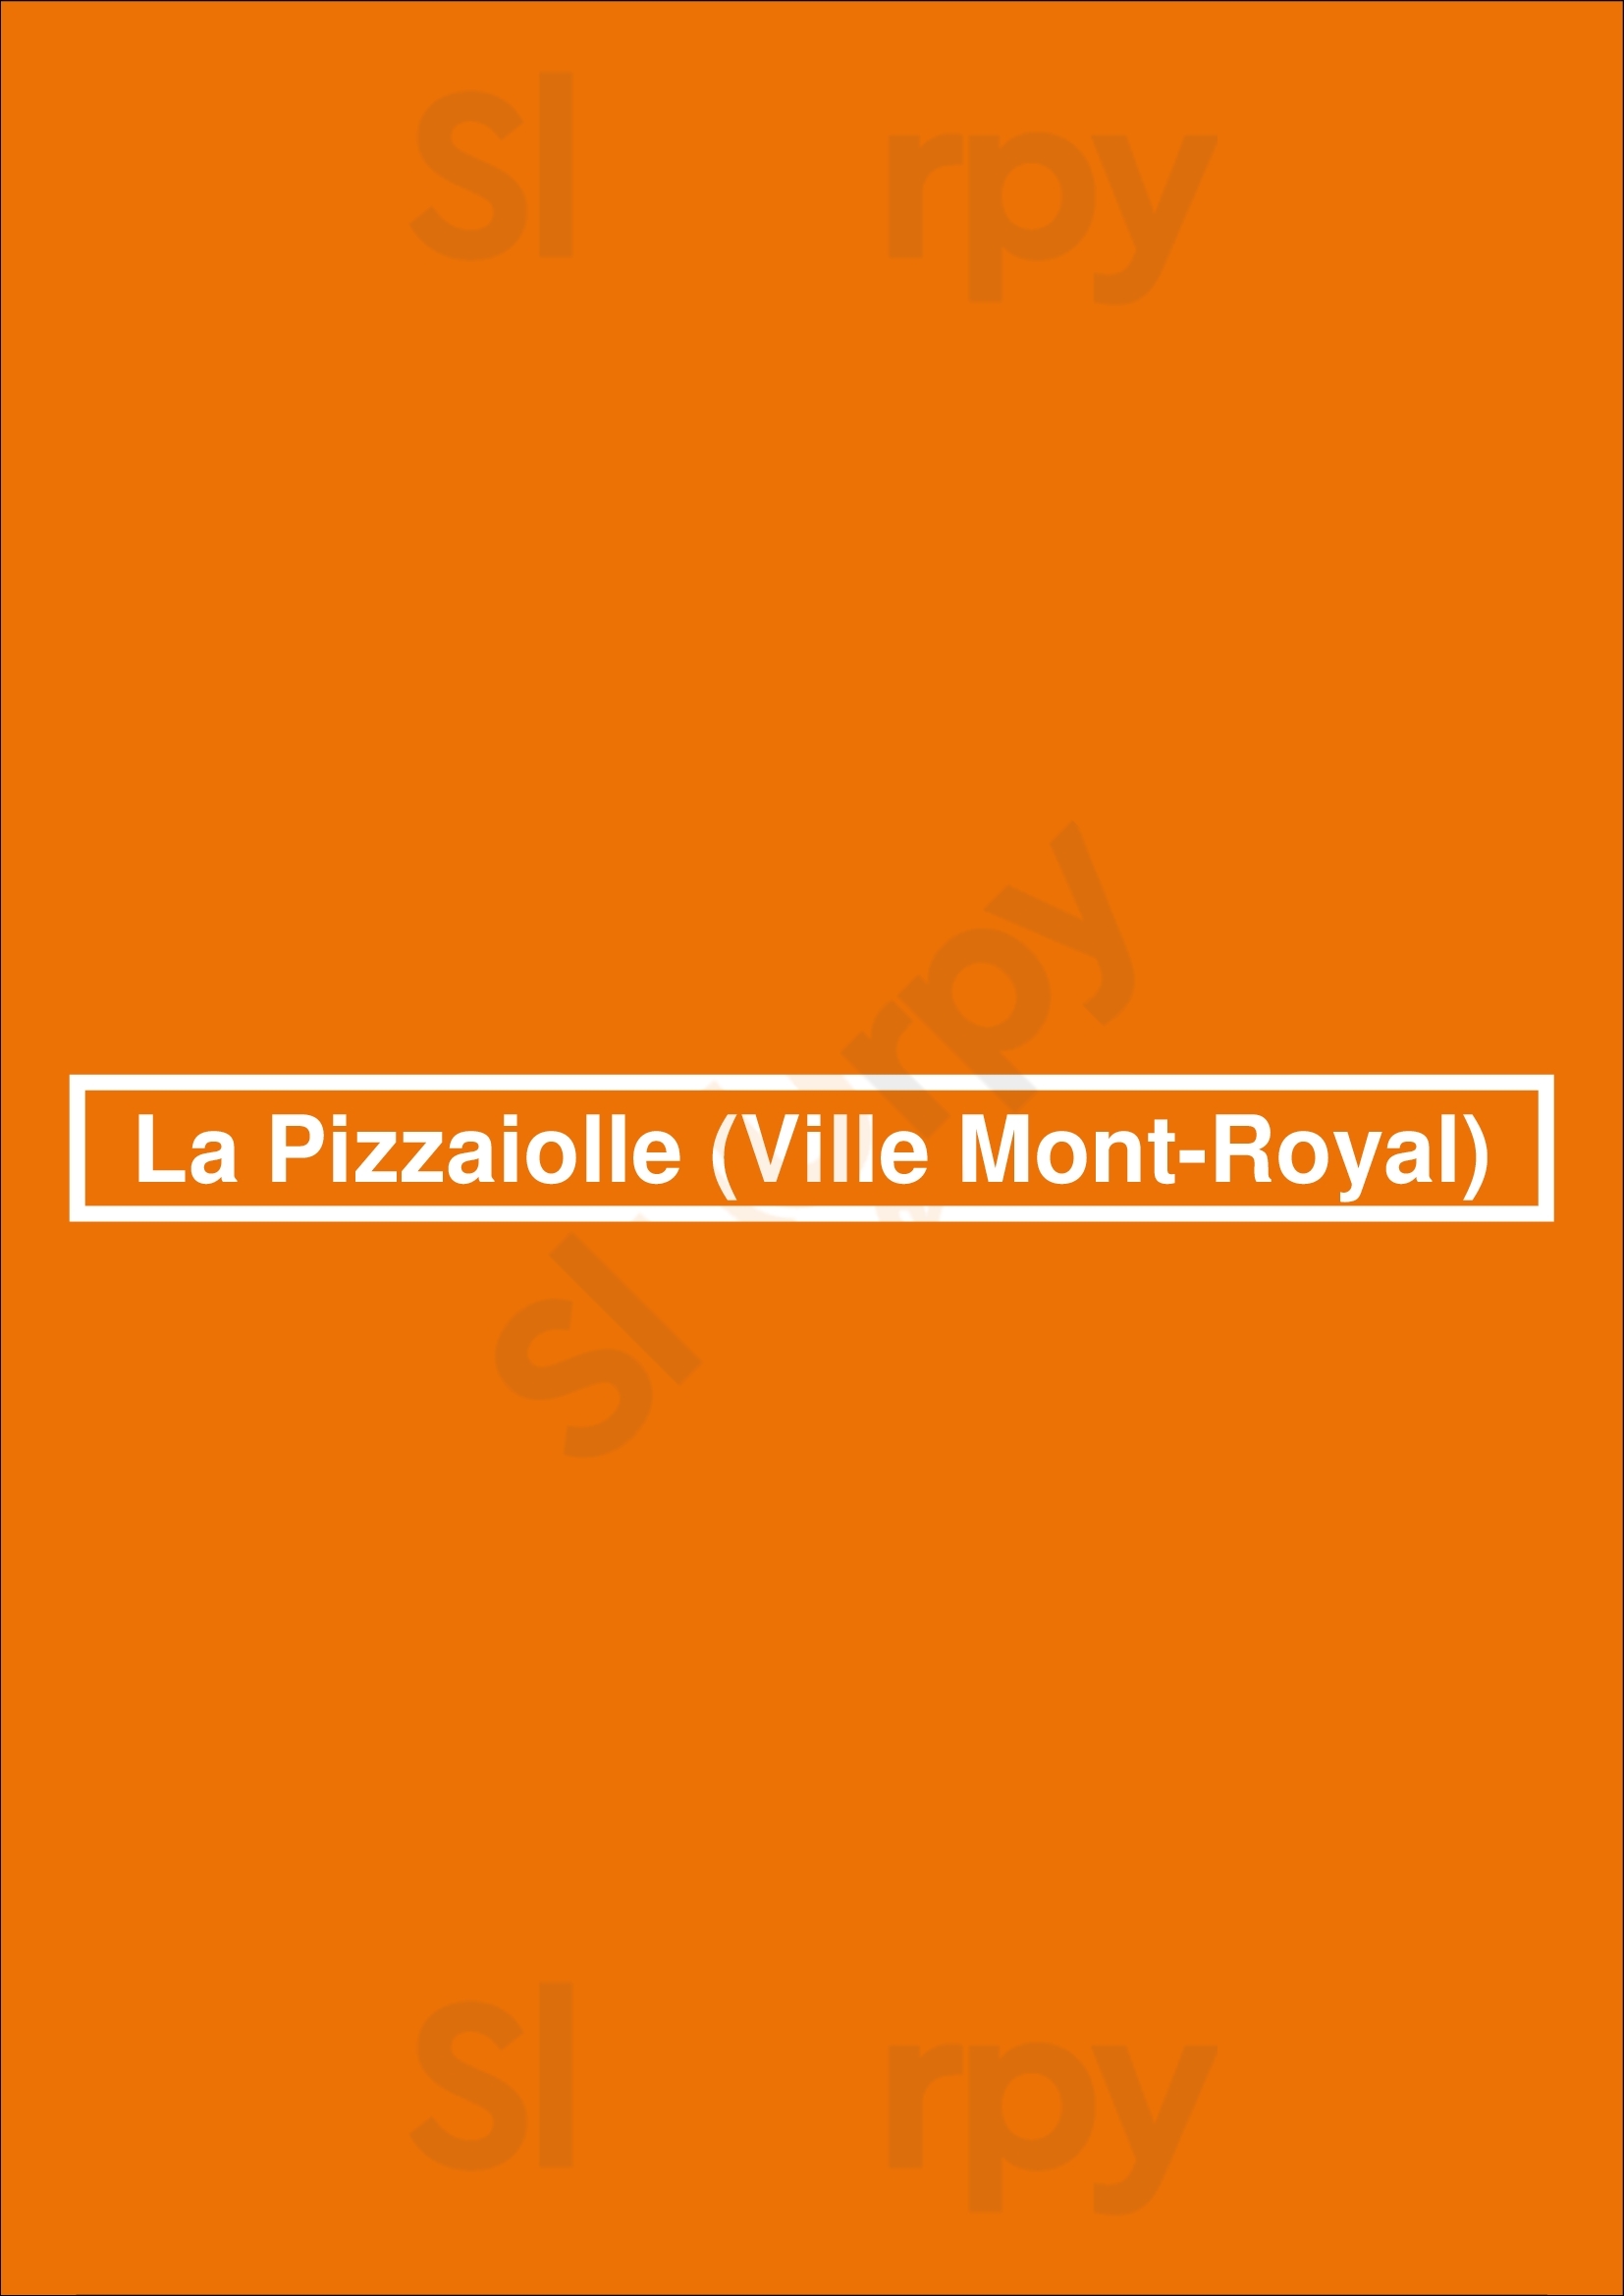 La Pizzaiolle (ville Mont-royal) Montreal Menu - 1